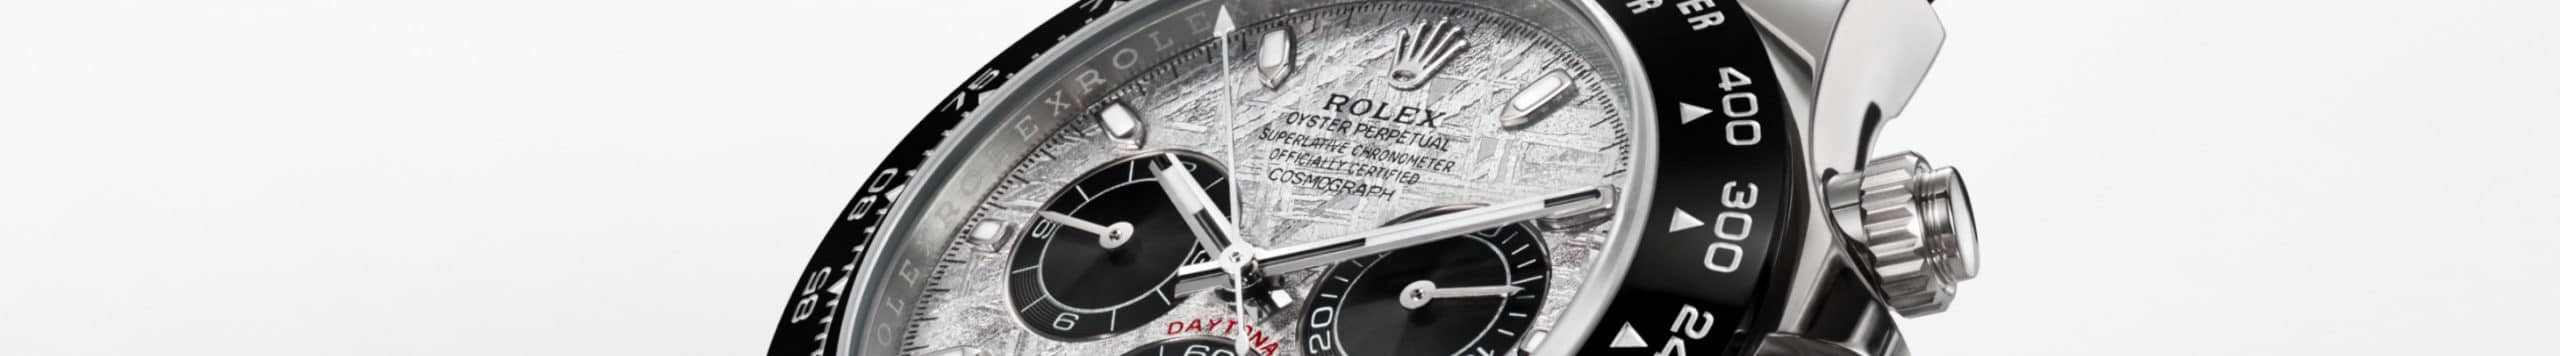 นาฬิกา Rolex Cosmograph Daytona ที่ ไทม์ ไมดาส สยามพารากอน